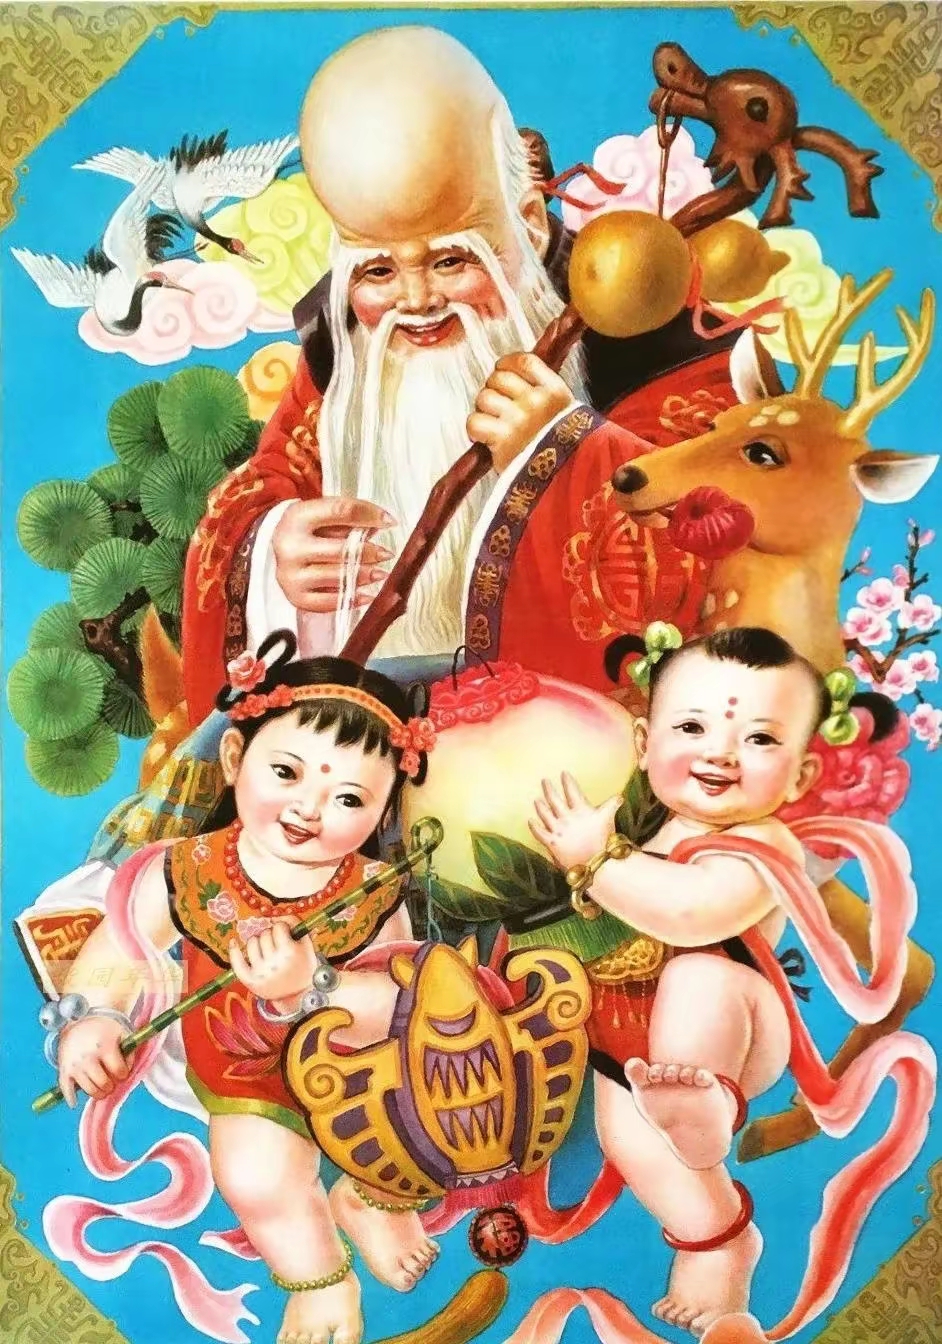 传统年画欣赏这才是中国风经典画作喜气洋洋喜庆吉祥